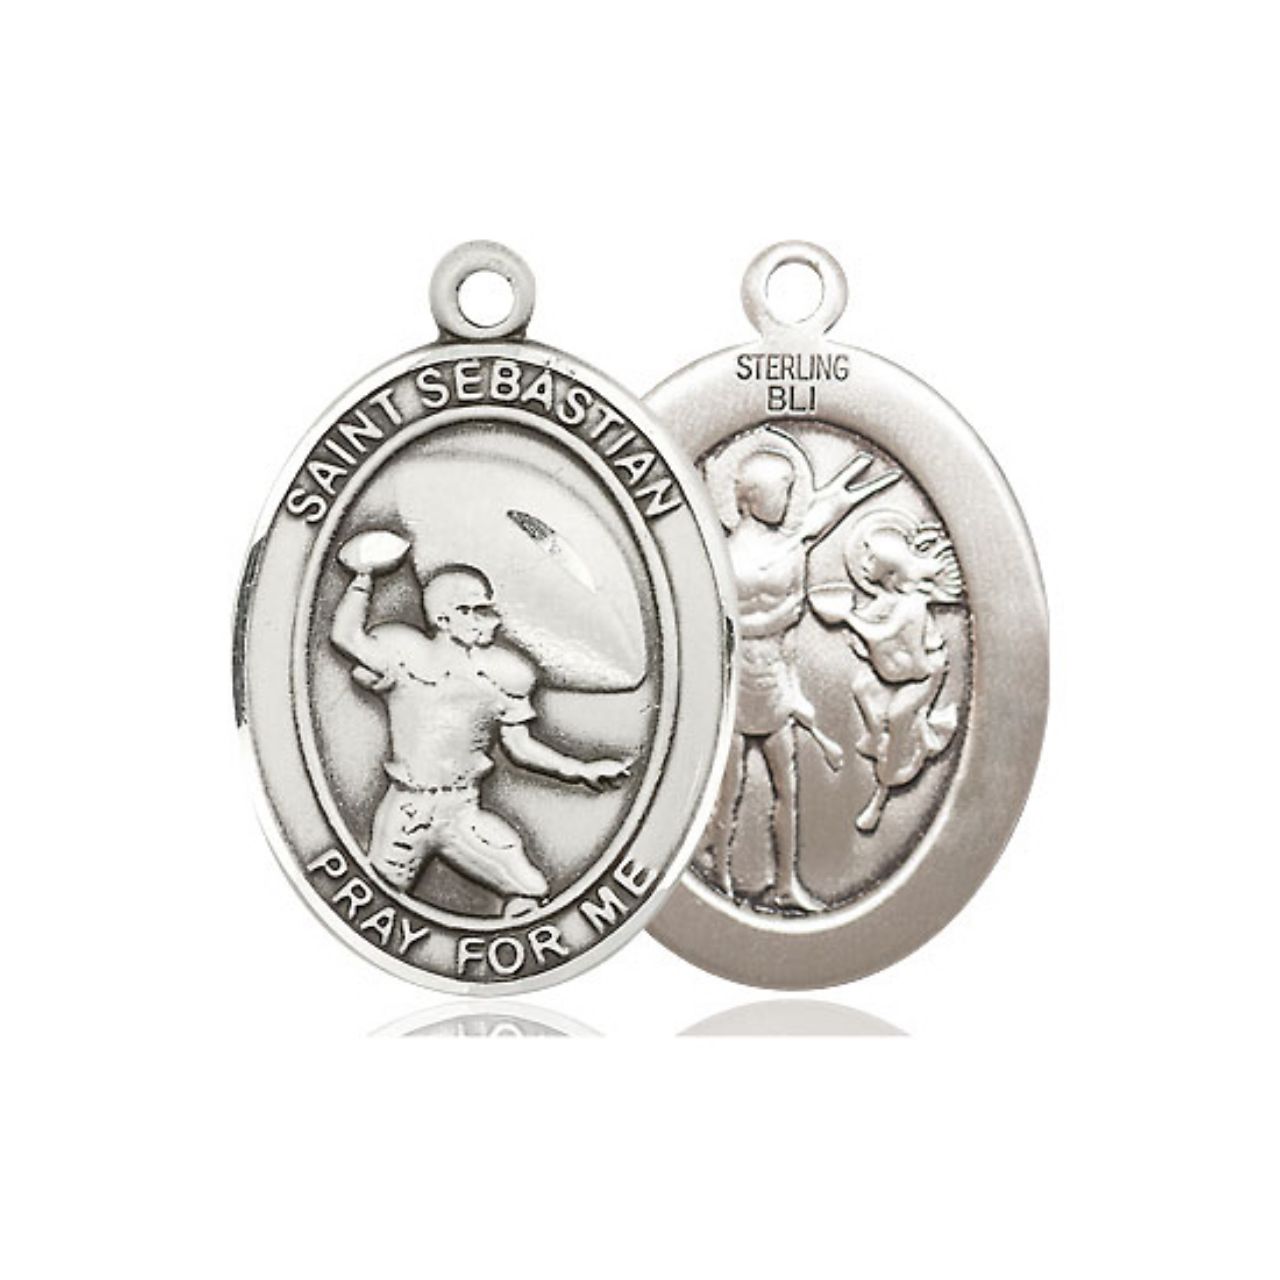 St. Sebastian Football Medal - Sterling Silver Oval Pendant (2 Sizes)